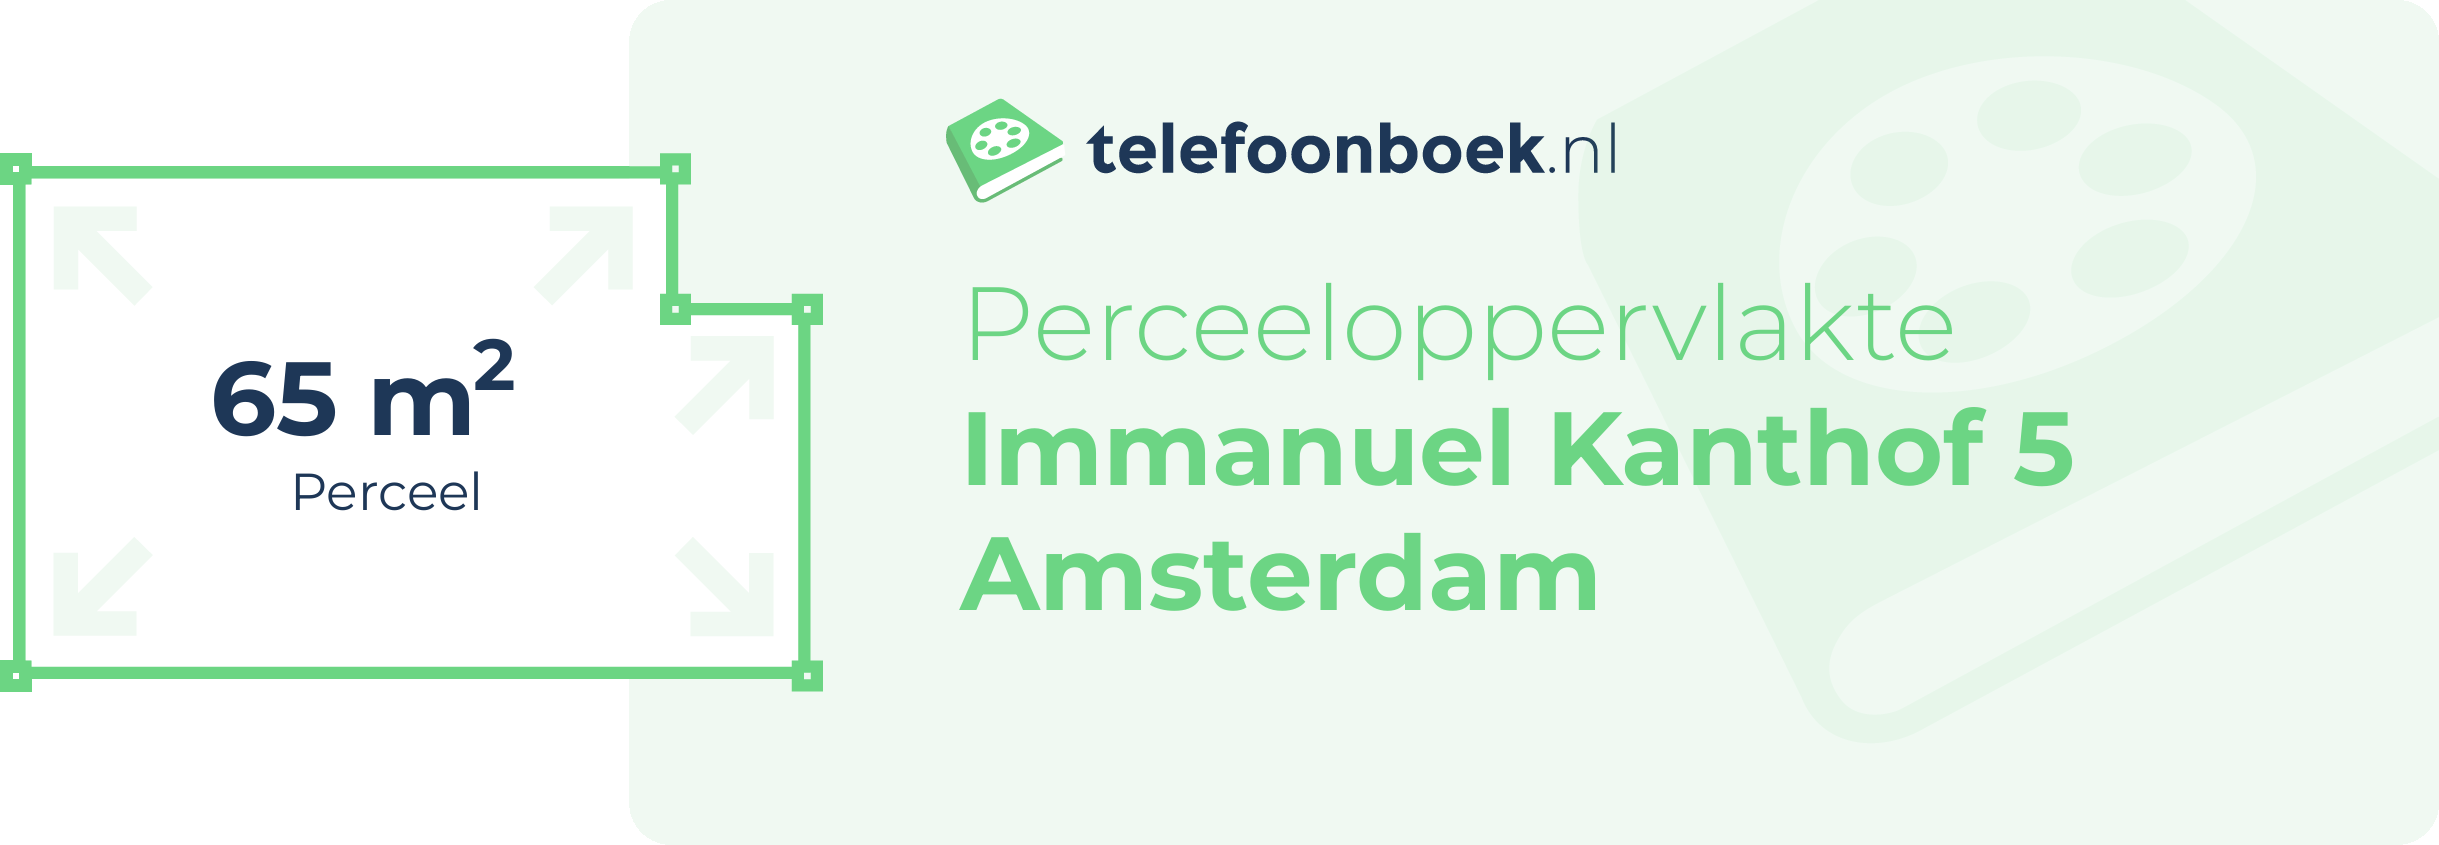 Perceeloppervlakte Immanuel Kanthof 5 Amsterdam